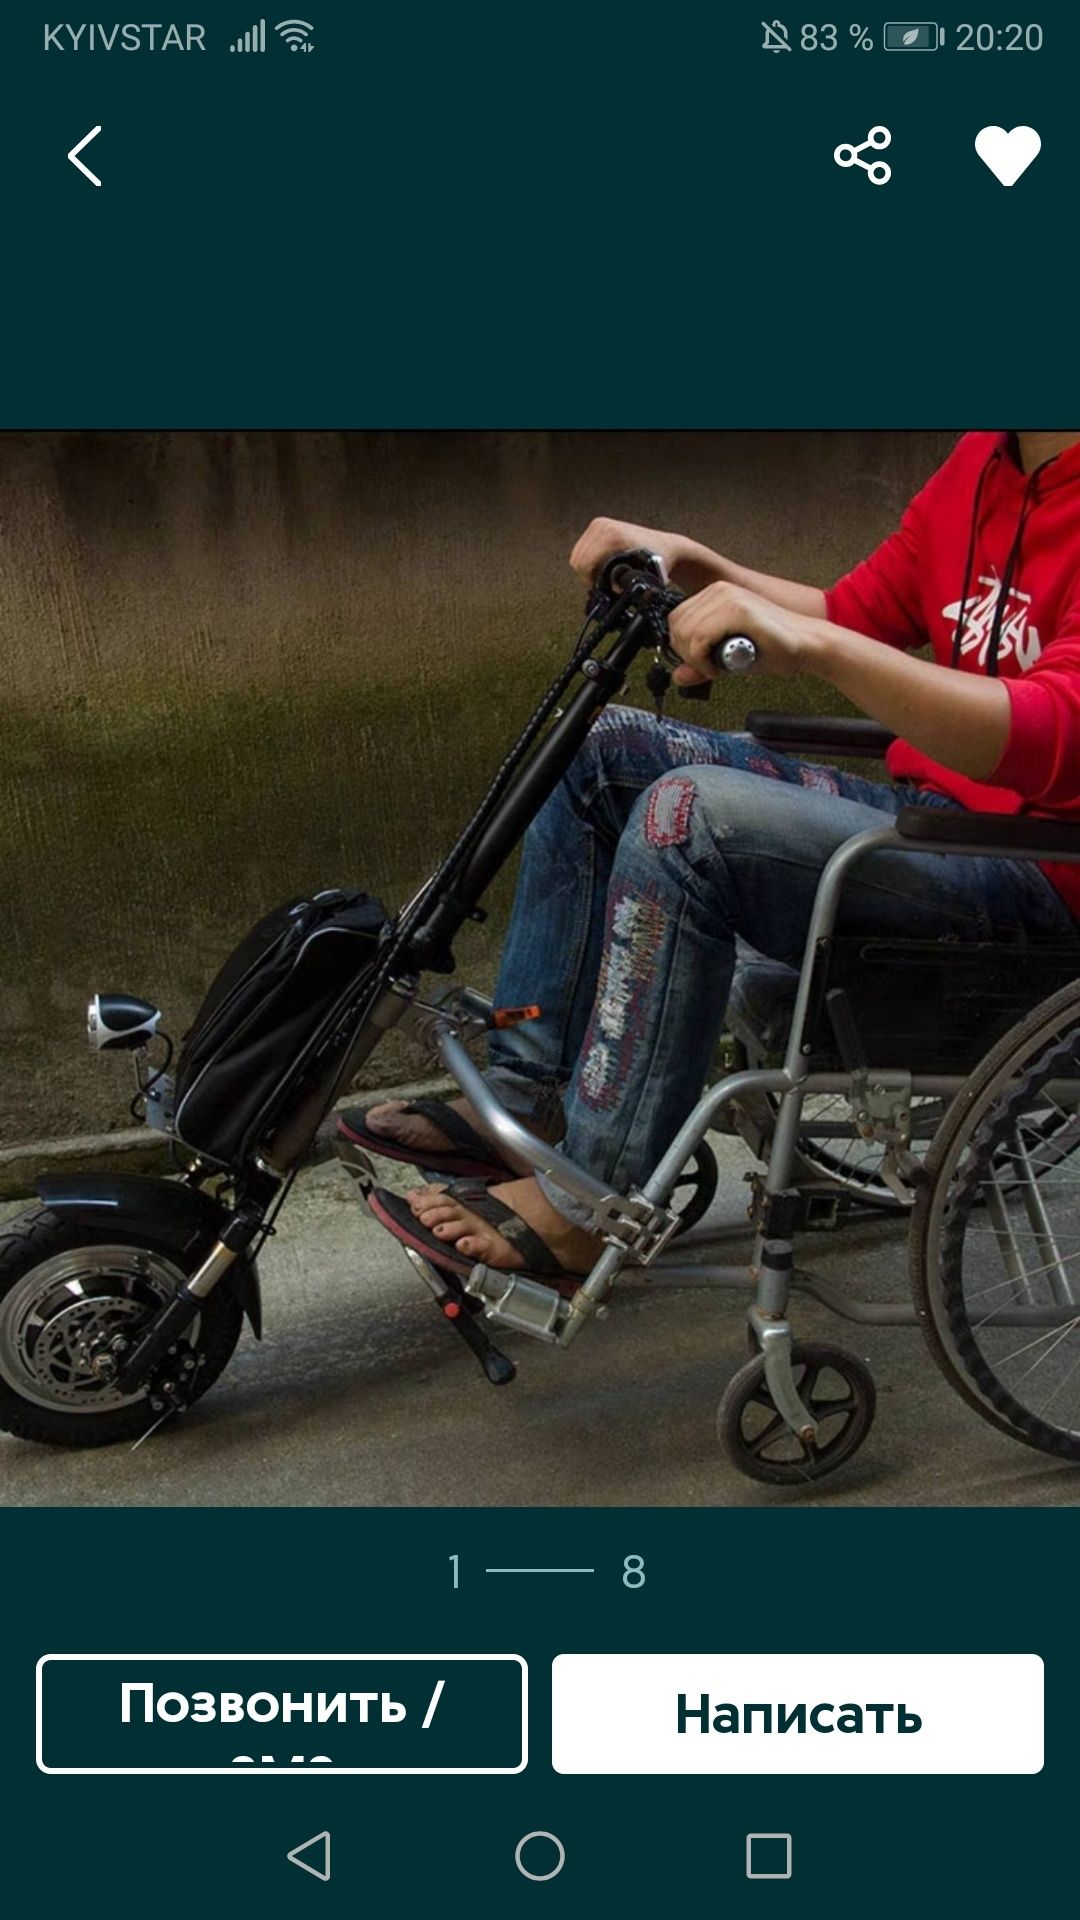 МОТОР КОЛЕСО для инвалидной коляски.